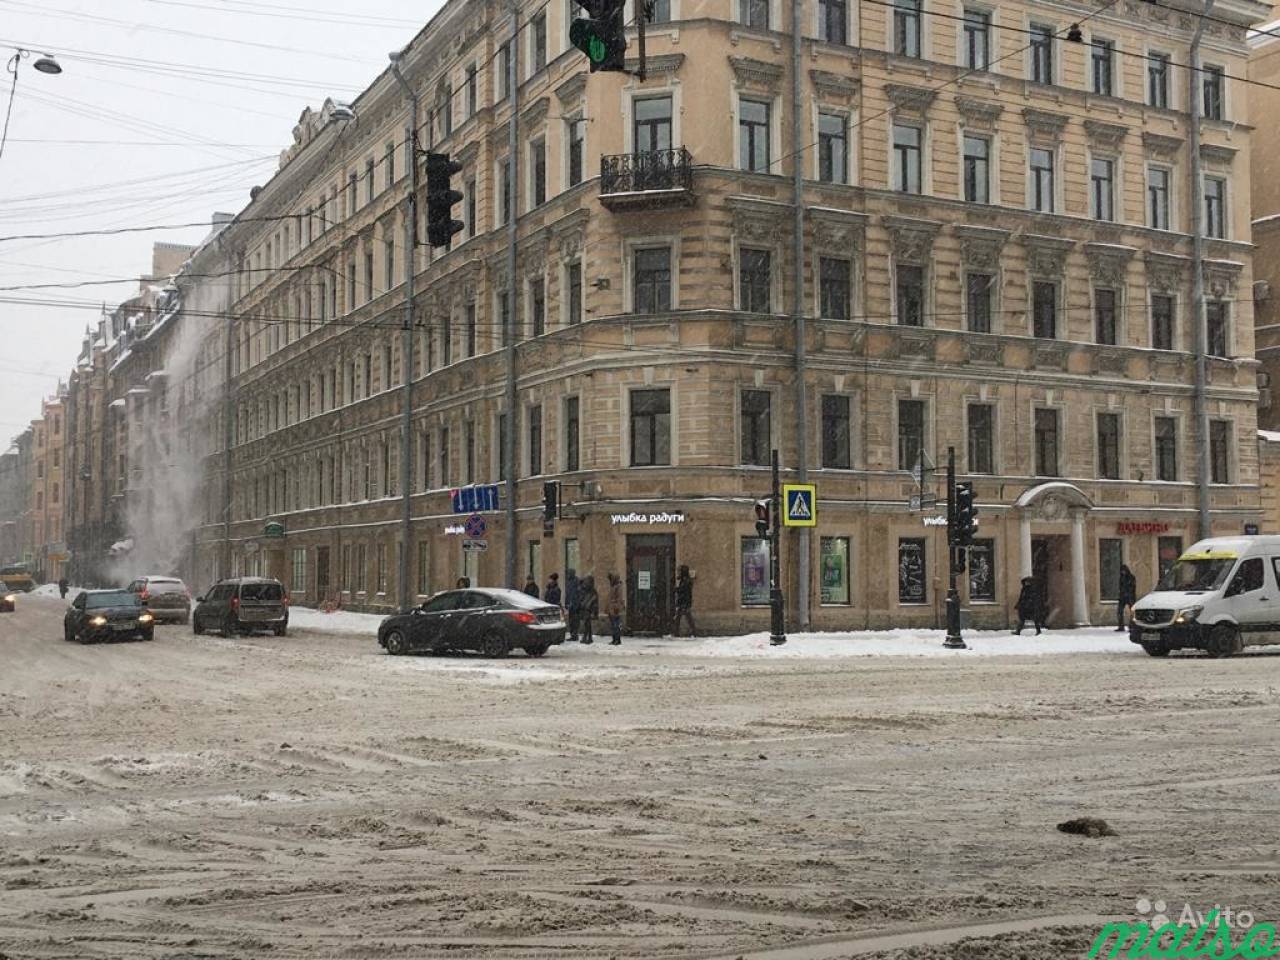 Торговое помещение с витринами, 263 м² на Невском в Санкт-Петербурге. Фото 1